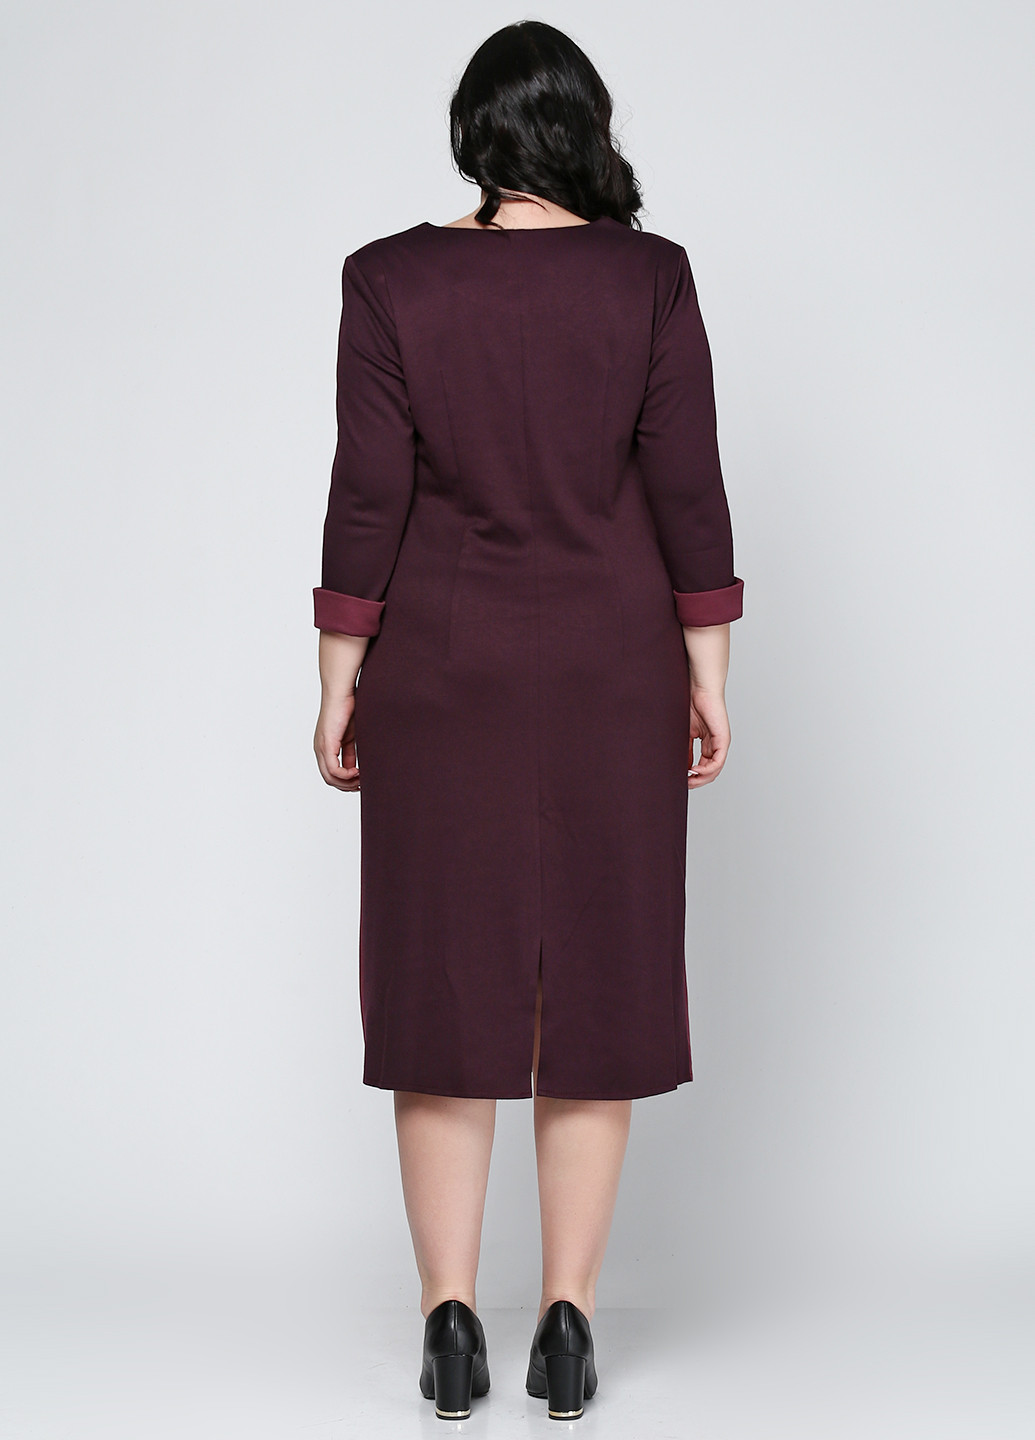 Фиолетовое деловое платье миди Колибри S с геометрическим узором